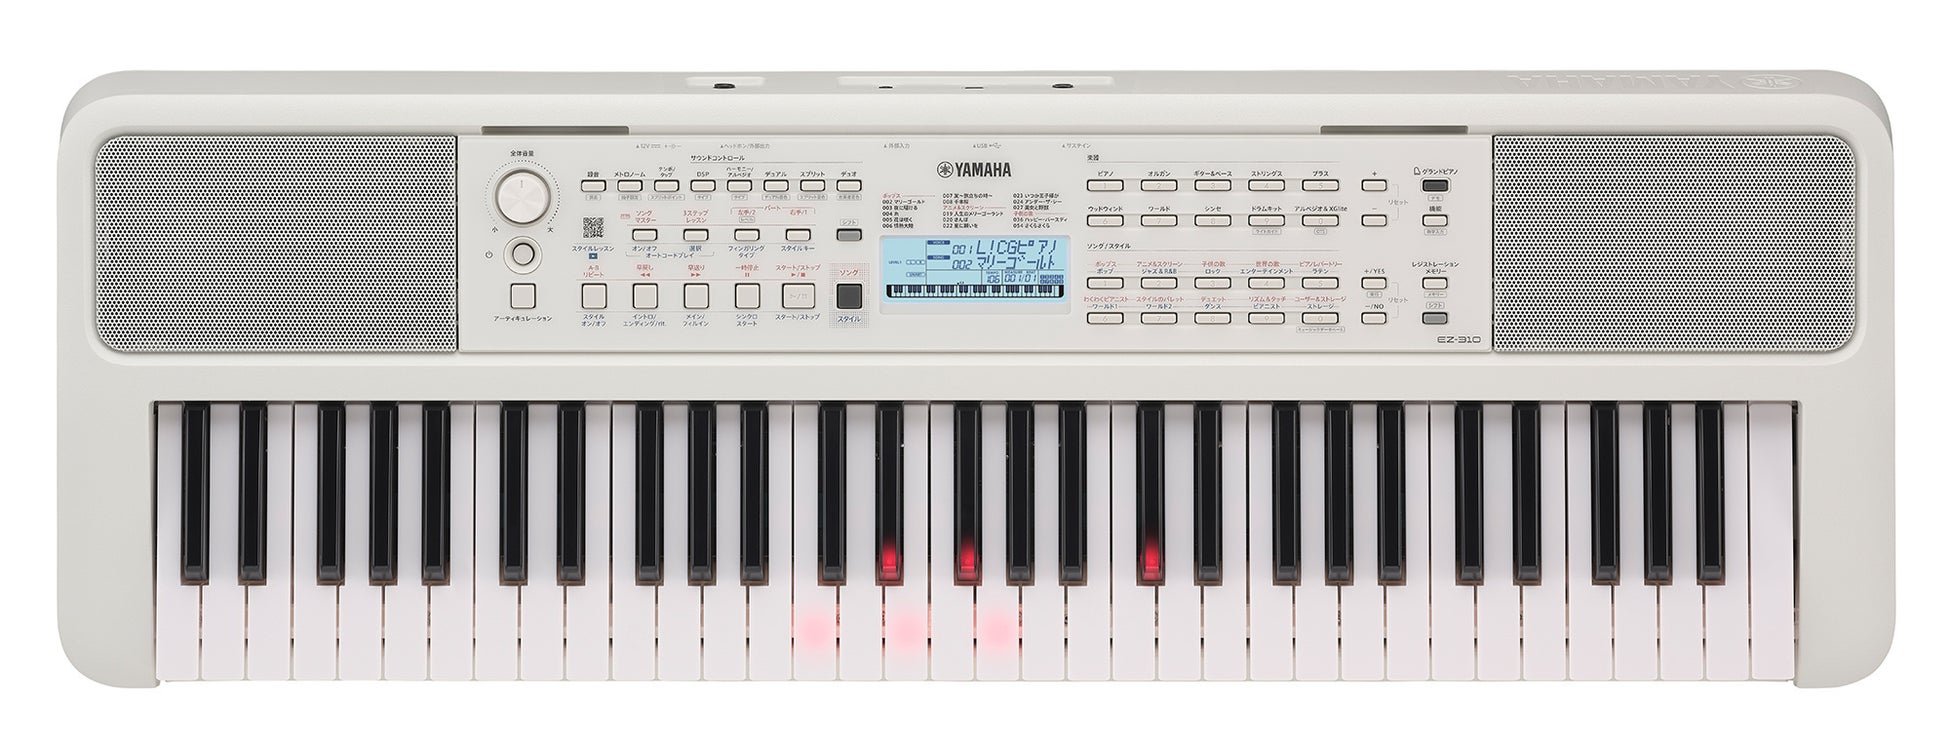 演奏レベルに合わせて憧れの曲を楽しめる光る鍵盤搭載モデル　ヤマハ 電子キーボード『EZ-310』を発売